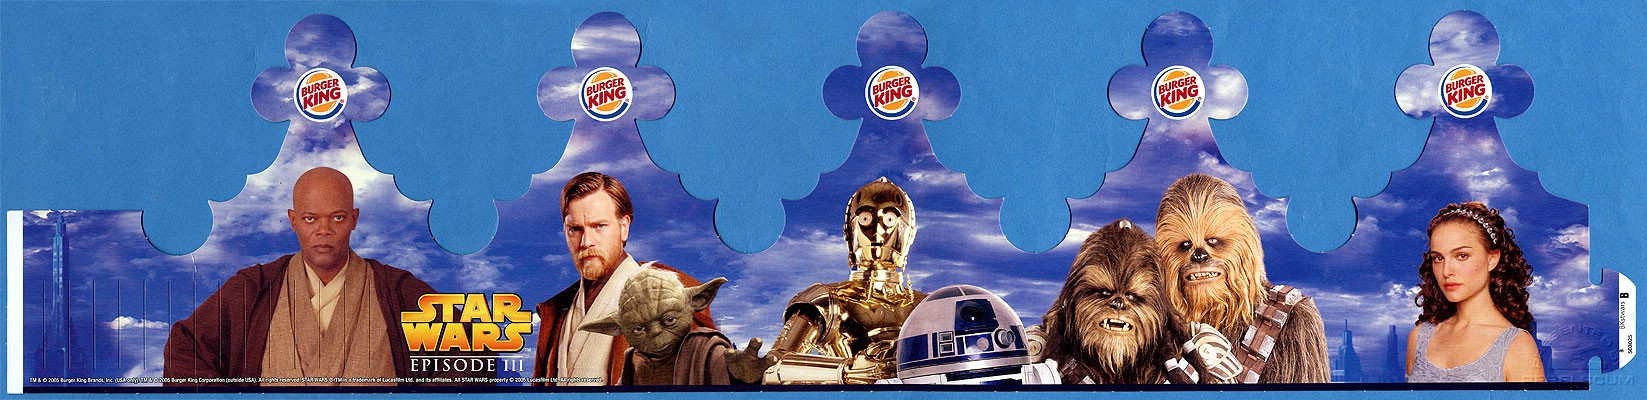 Burger King Star Wars Crown